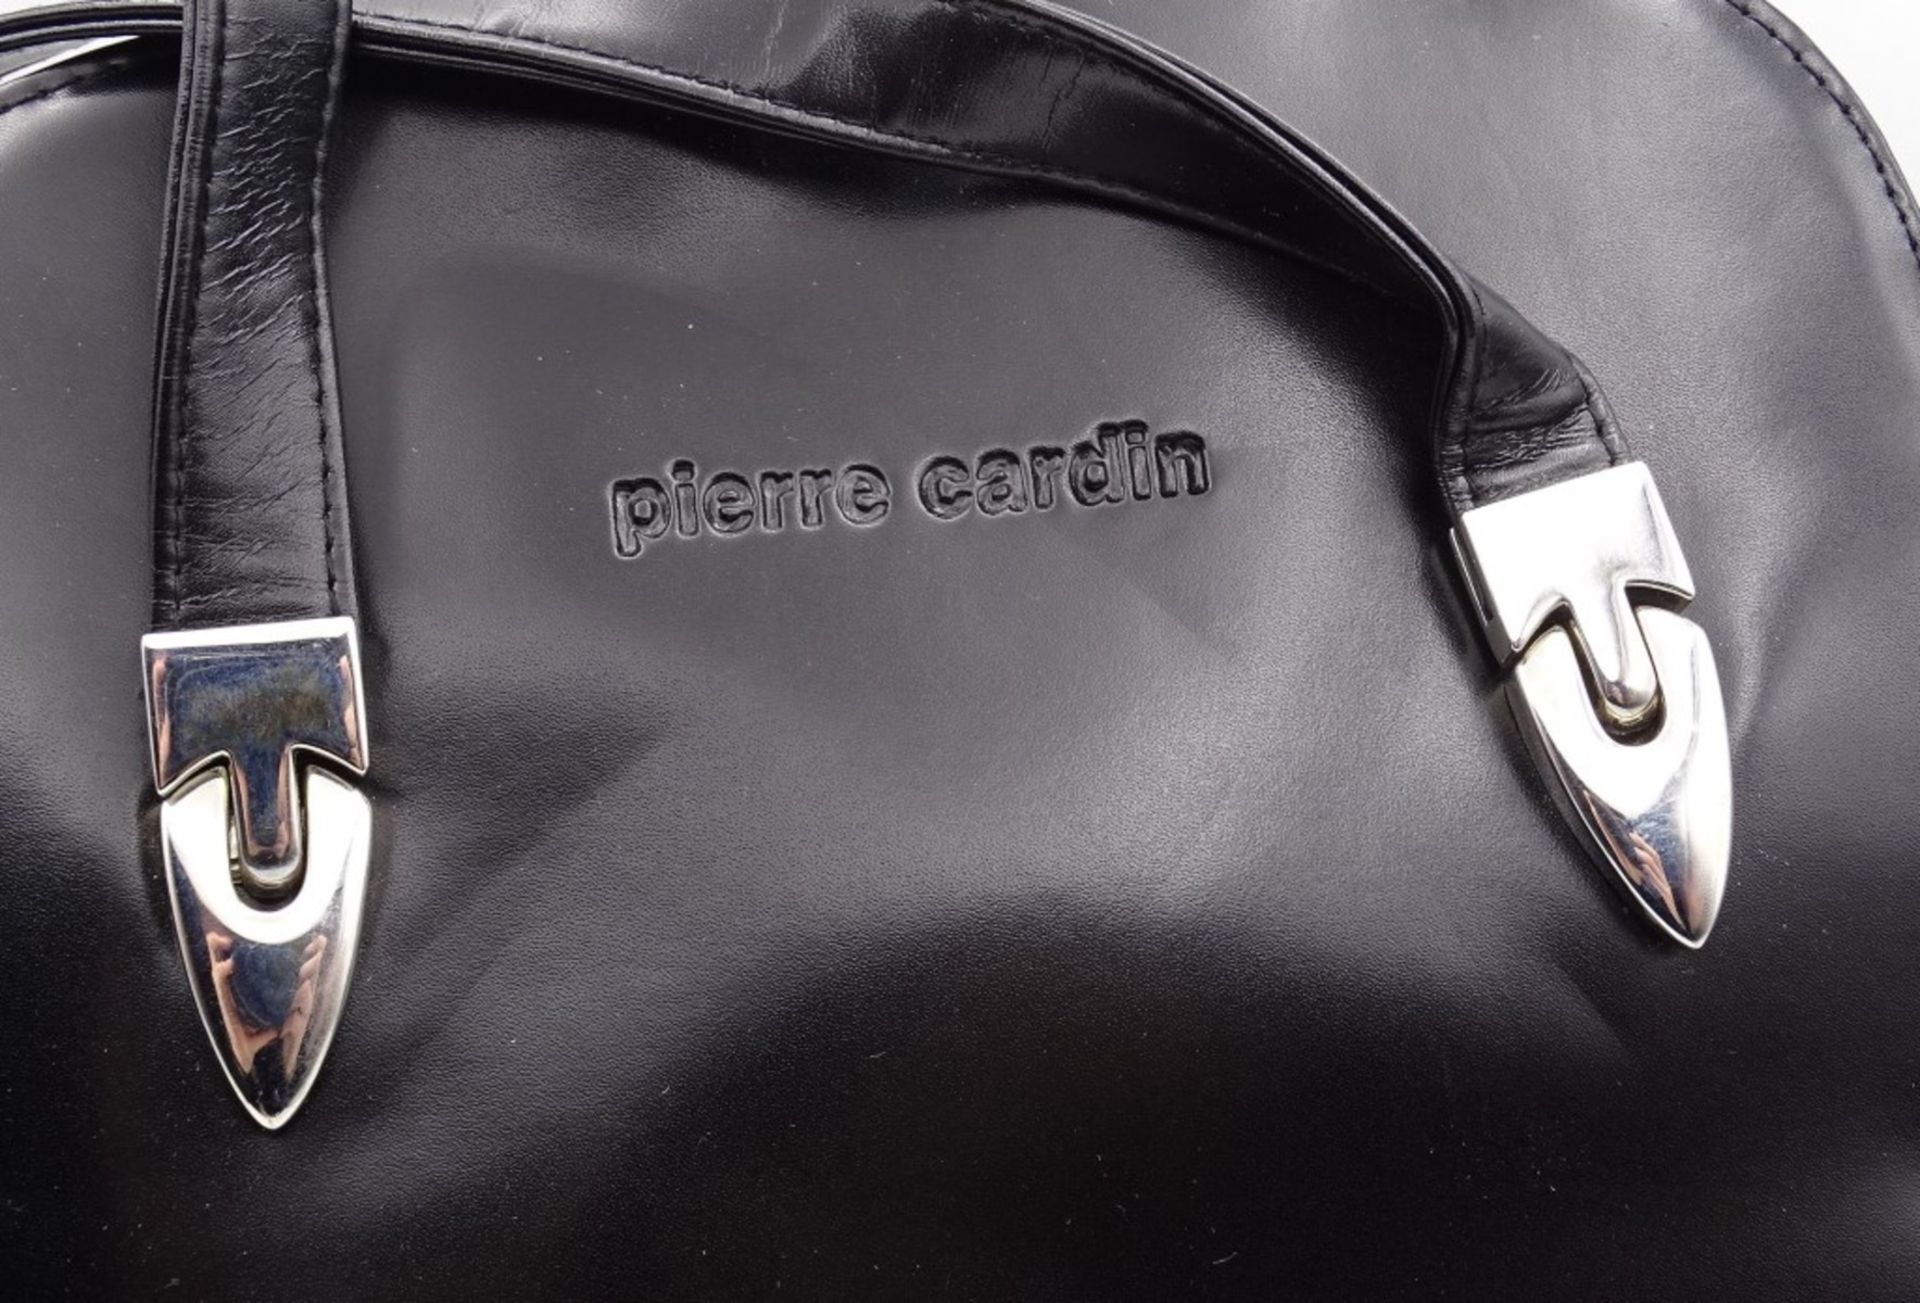 Damentasche "Pierre Cardin",schwarz,guter Zustand, 24 x 28 cm - Image 2 of 4